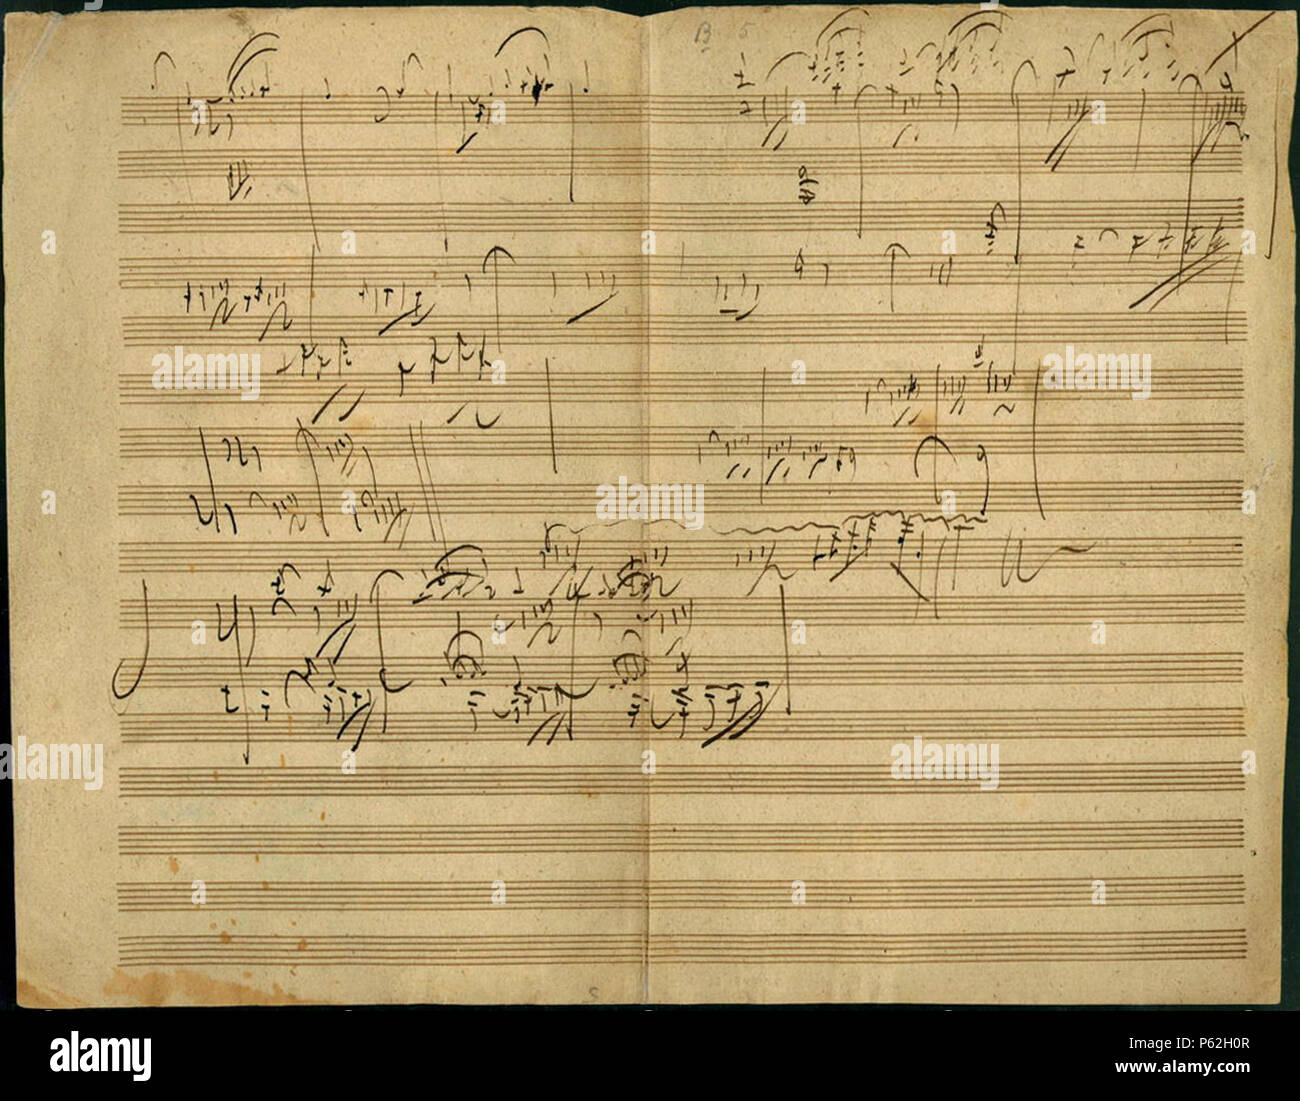 N/A. Sonate pour piano en la majeur, op. 101, Allegro : croquis manuscrit  de Beethoven, l'écriture. 1816. Ludwig van Beethoven (1770-1827) Noms  alternatifs Description Beethoven le compositeur et pianiste allemand  c'était un